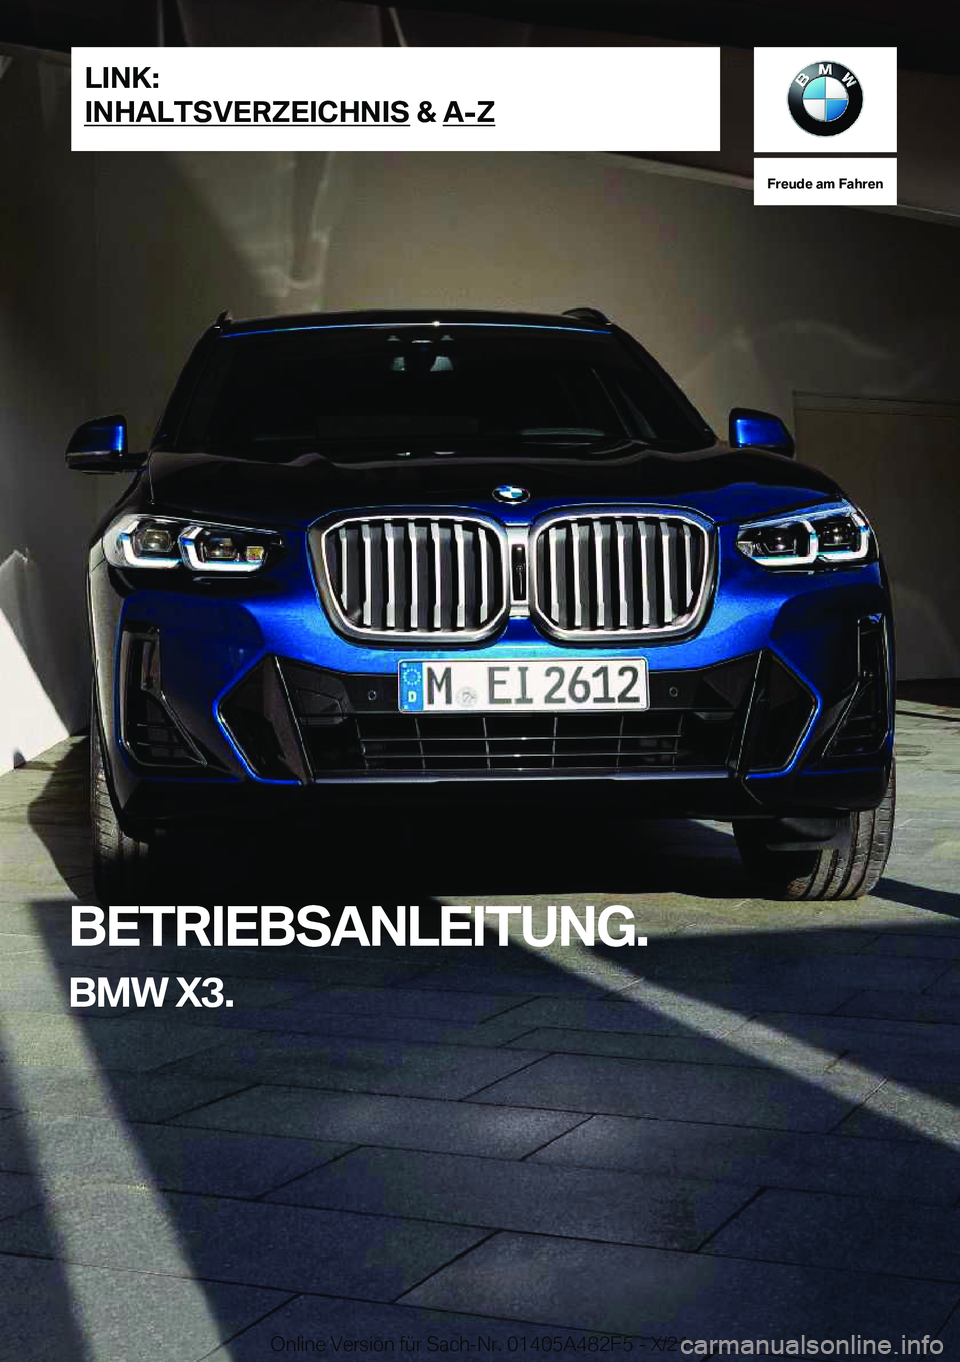 BMW X3 2022  Betriebsanleitungen (in German) �F�r�e�u�d�e��a�m��F�a�h�r�e�n
�B�E�T�R�I�E�B�S�A�N�L�E�I�T�U�N�G�.�B�M�W��X�3�.�L�I�N�K�:
�I�N�H�A�L�T�S�V�E�R�Z�E�I�C�H�N�I�S��&��A�-�Z�O�n�l�i�n�e��V�e�r�s�i�o�n��f�